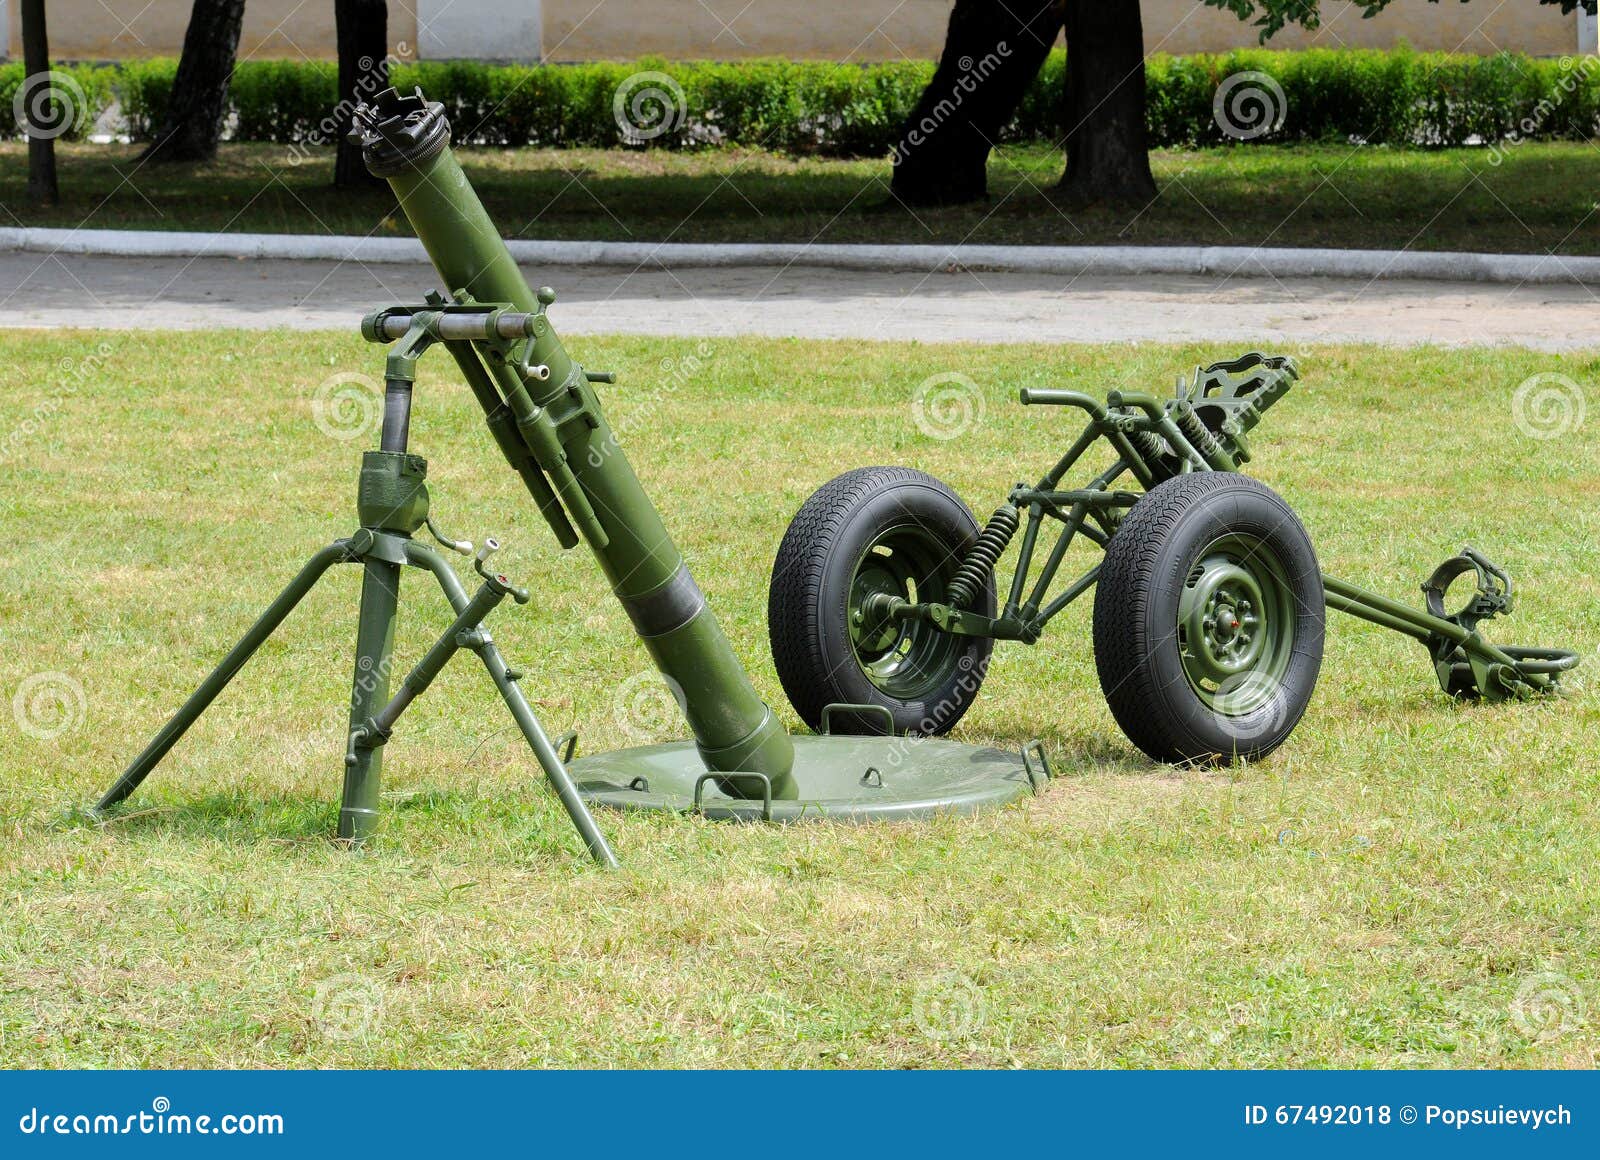 Б 2б 11. 120-Мм возимый миномёт 2б11. 120-Мм миномет 2б11 "сани". Миномёт 120 мм 2с12 сани. 120mm mortar Китай.